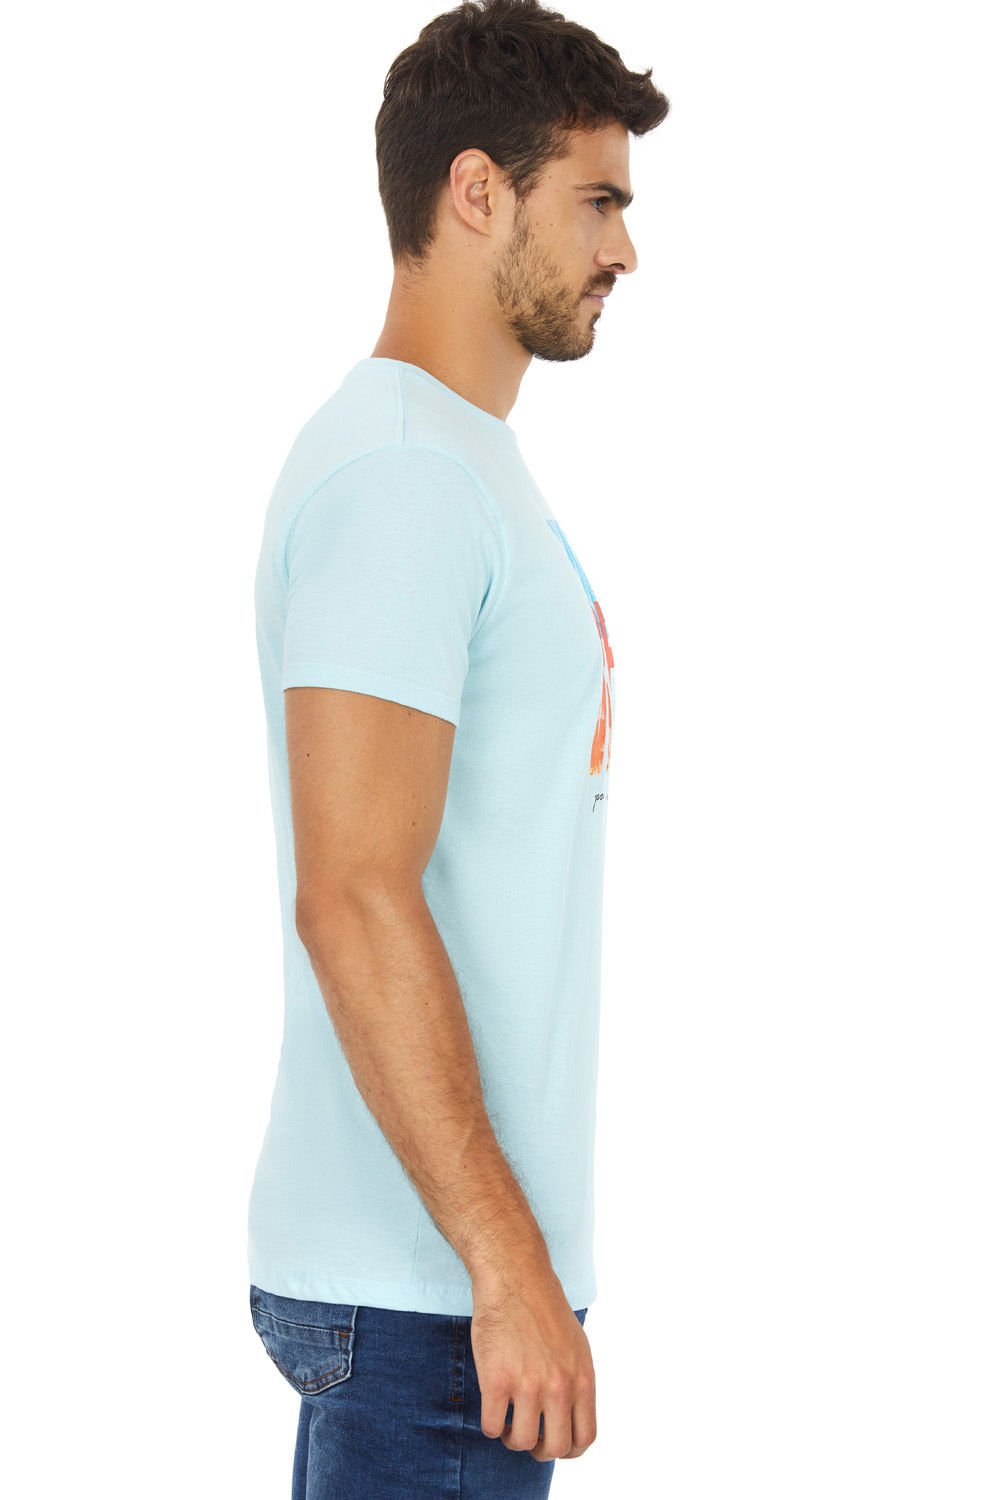 Camiseta Estampada Polo Wear Azul Claro